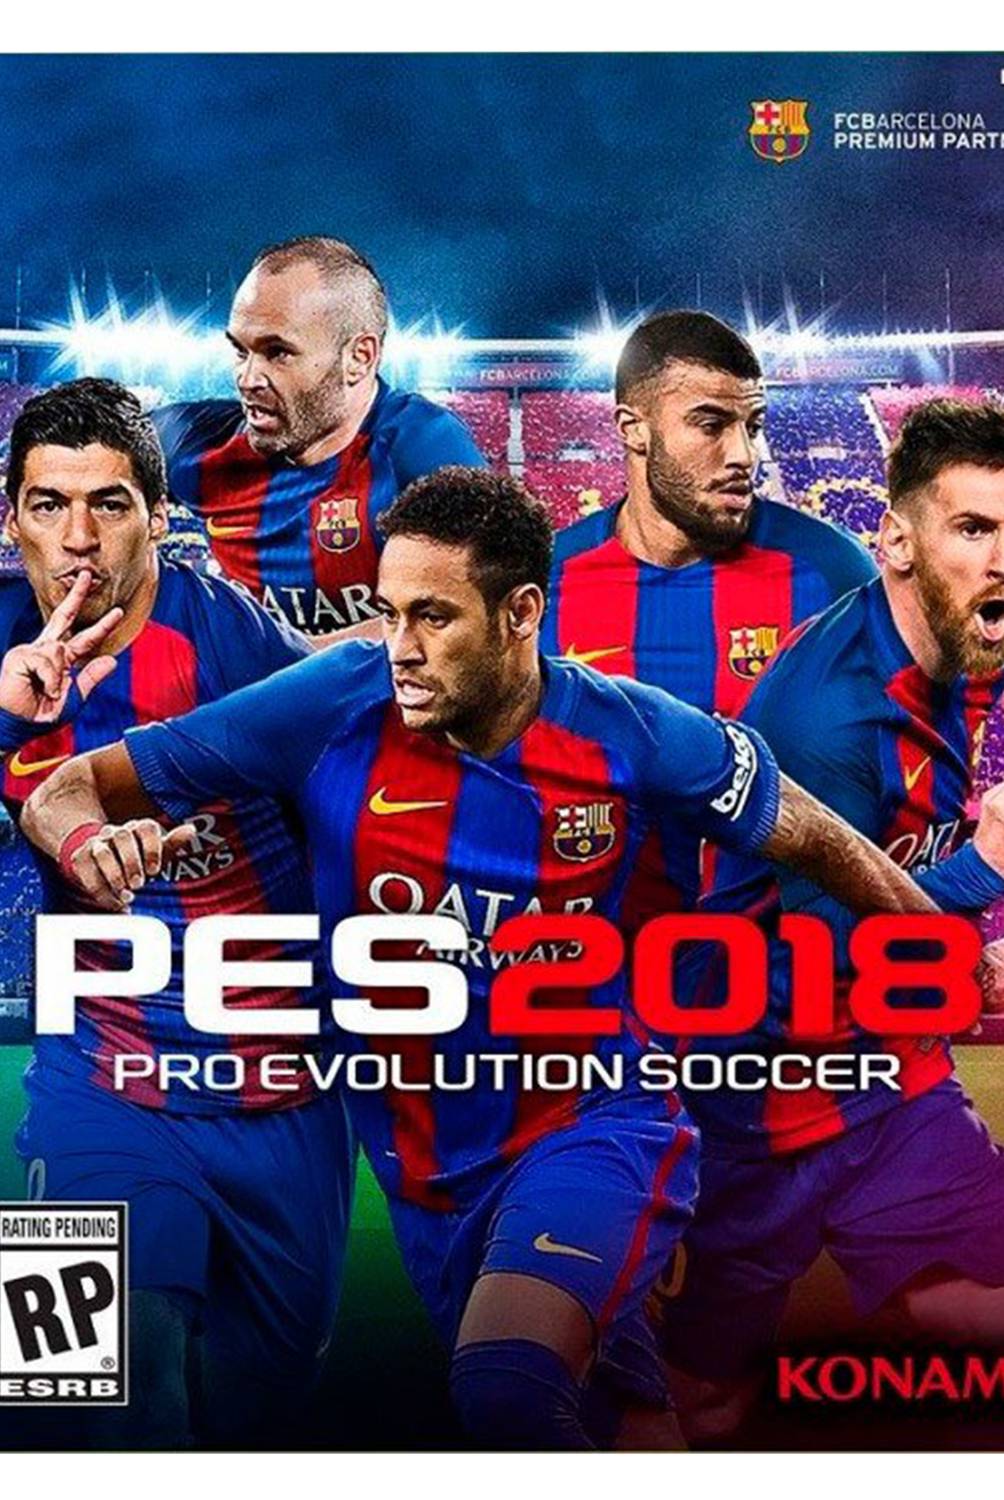 KONAMI - Xbox 360 Pro Evolution Soccer Pes 2018